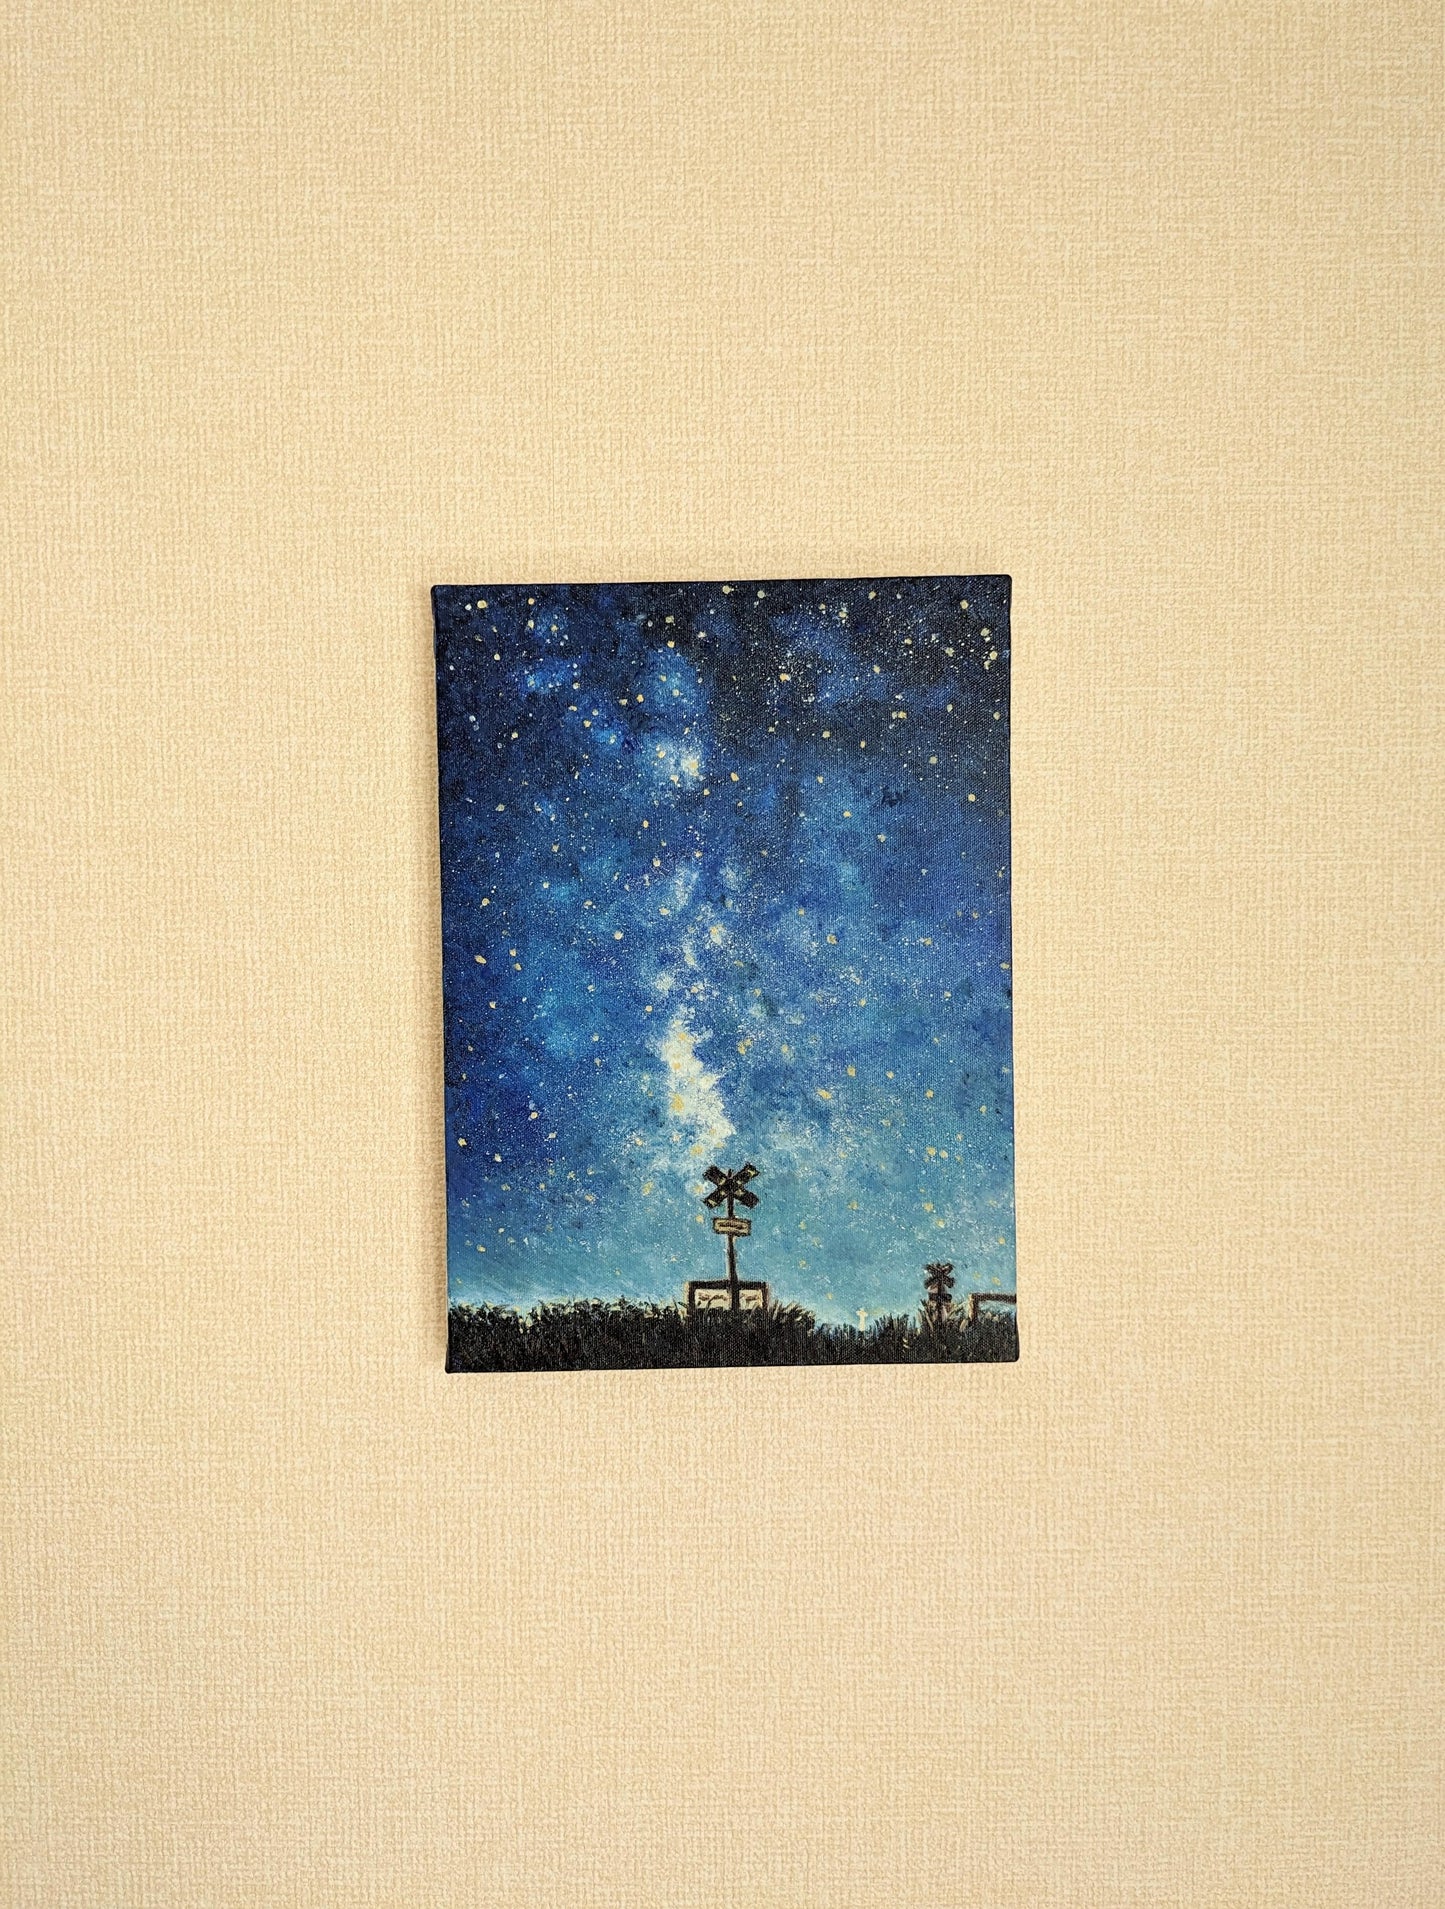 『夜空には(In the night sky)』 - FROM ARTIST